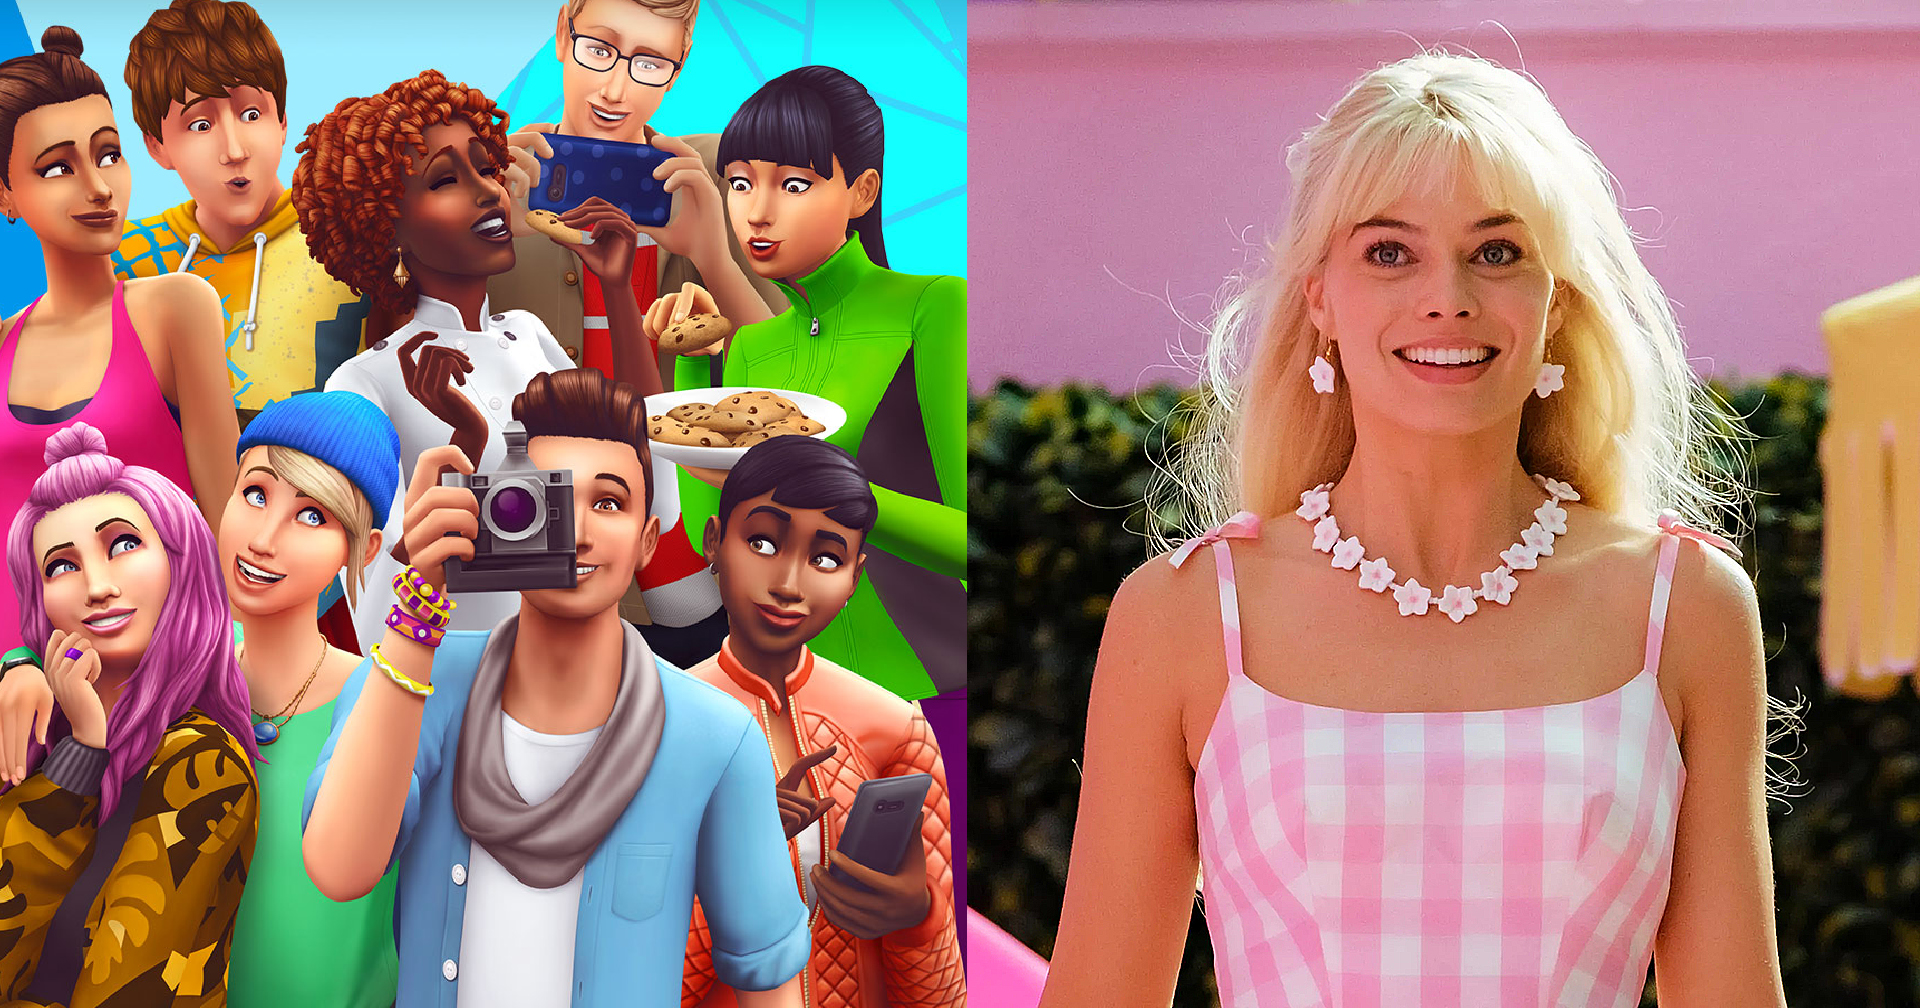 เกม ‘The Sims’ จะกลายเป็นหนังจริง ๆ โดยผู้สร้างจาก ‘Barbie’ และผู้กำกับ ‘Loki’